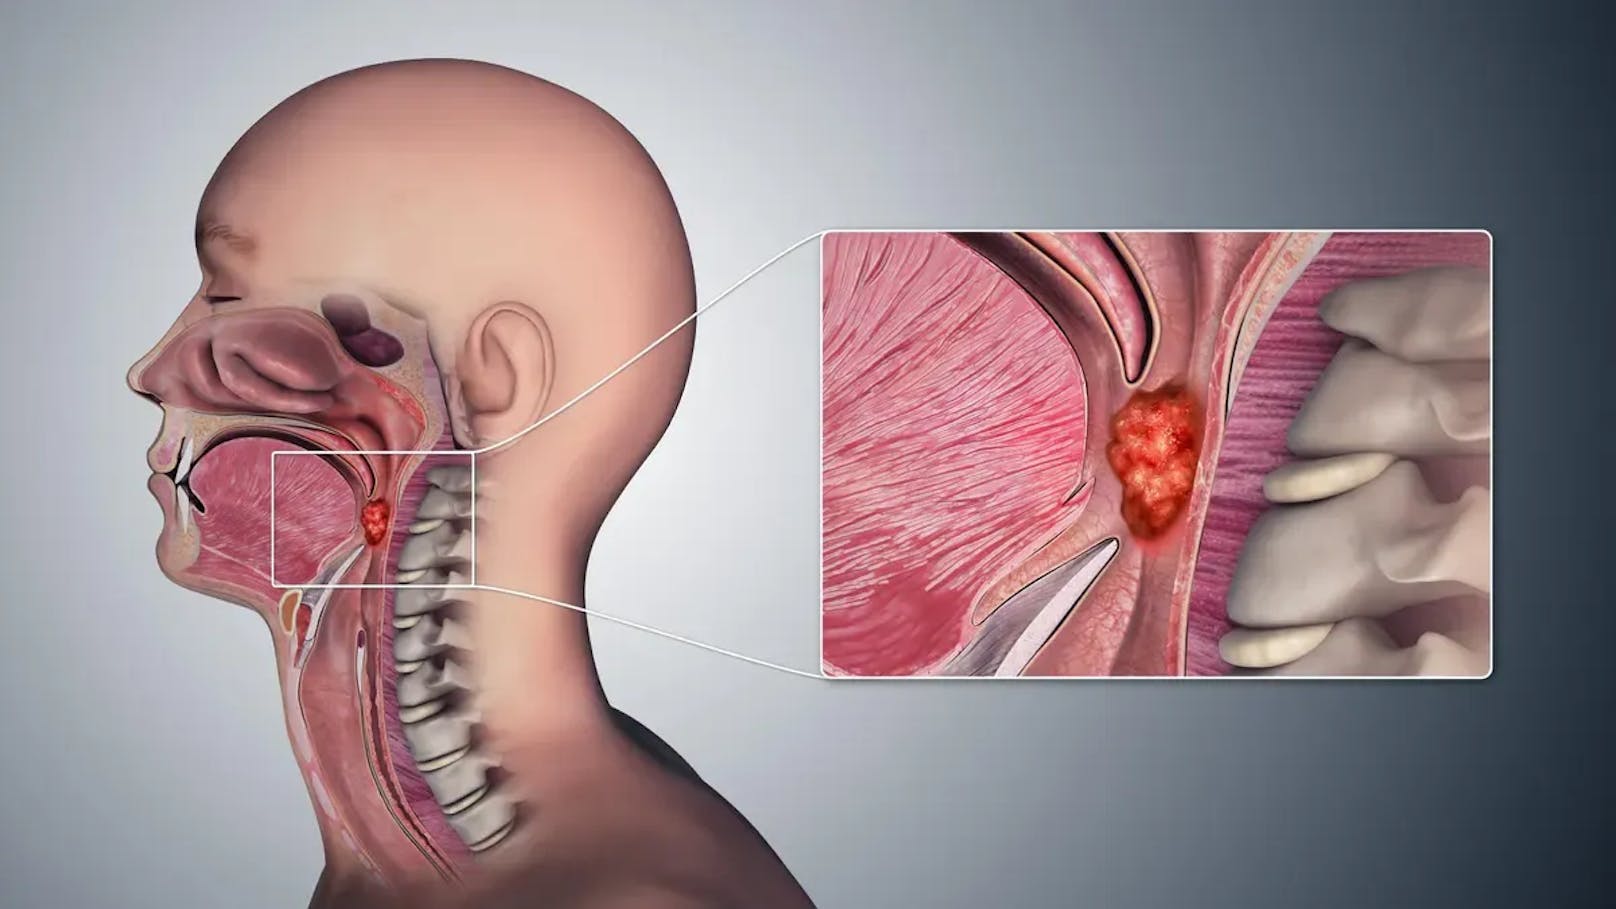 Der Anstieg betreffe vor allem Fälle von sogenannten Oropharynxkrebs, bei dem die Mandeln und der Rachen betroffen sind. (Im Bild: Medizinische 3D-Animation, die die Krebsbildung in den Geweben des Oropharynx zeigt.)